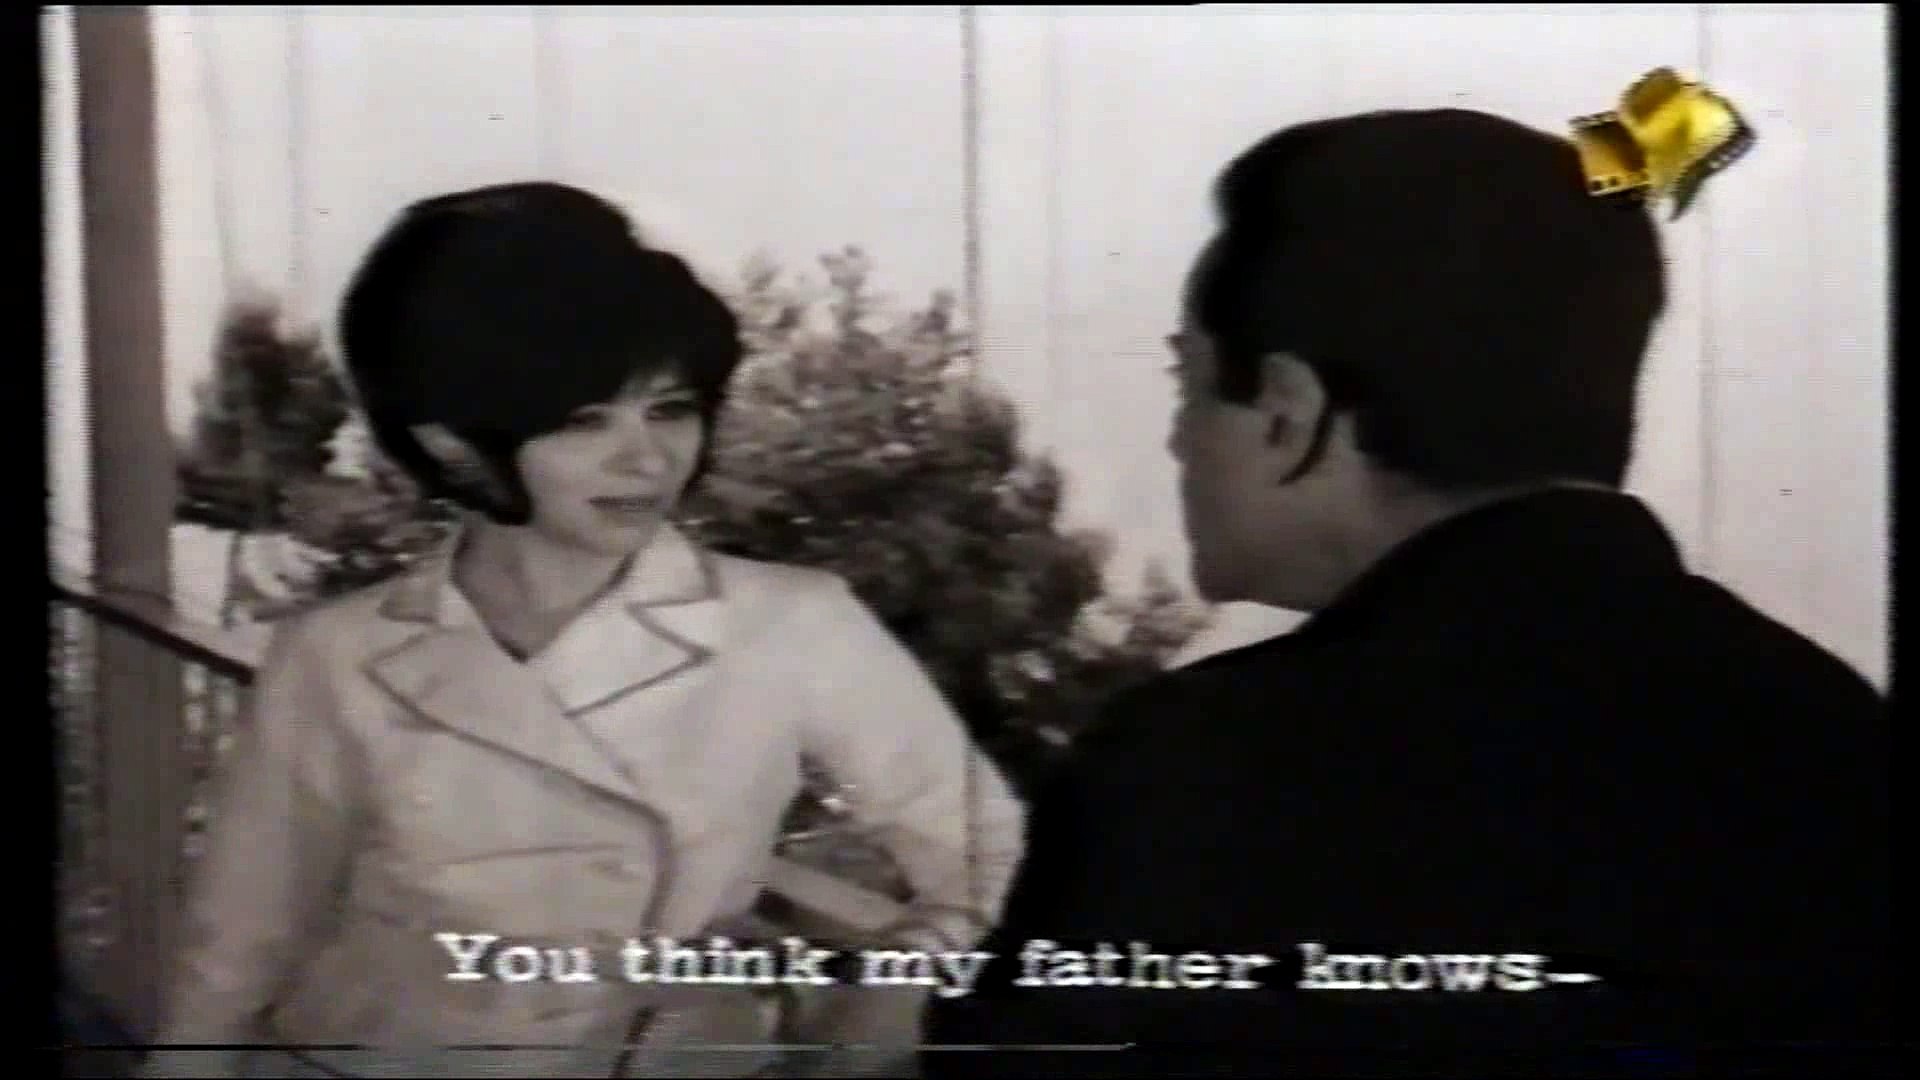 فيلم الحب الكبير 1968 بطولة فريد الأطرش فاتن حمامة يوسف وهبي الجزء الثاني -  video Dailymotion